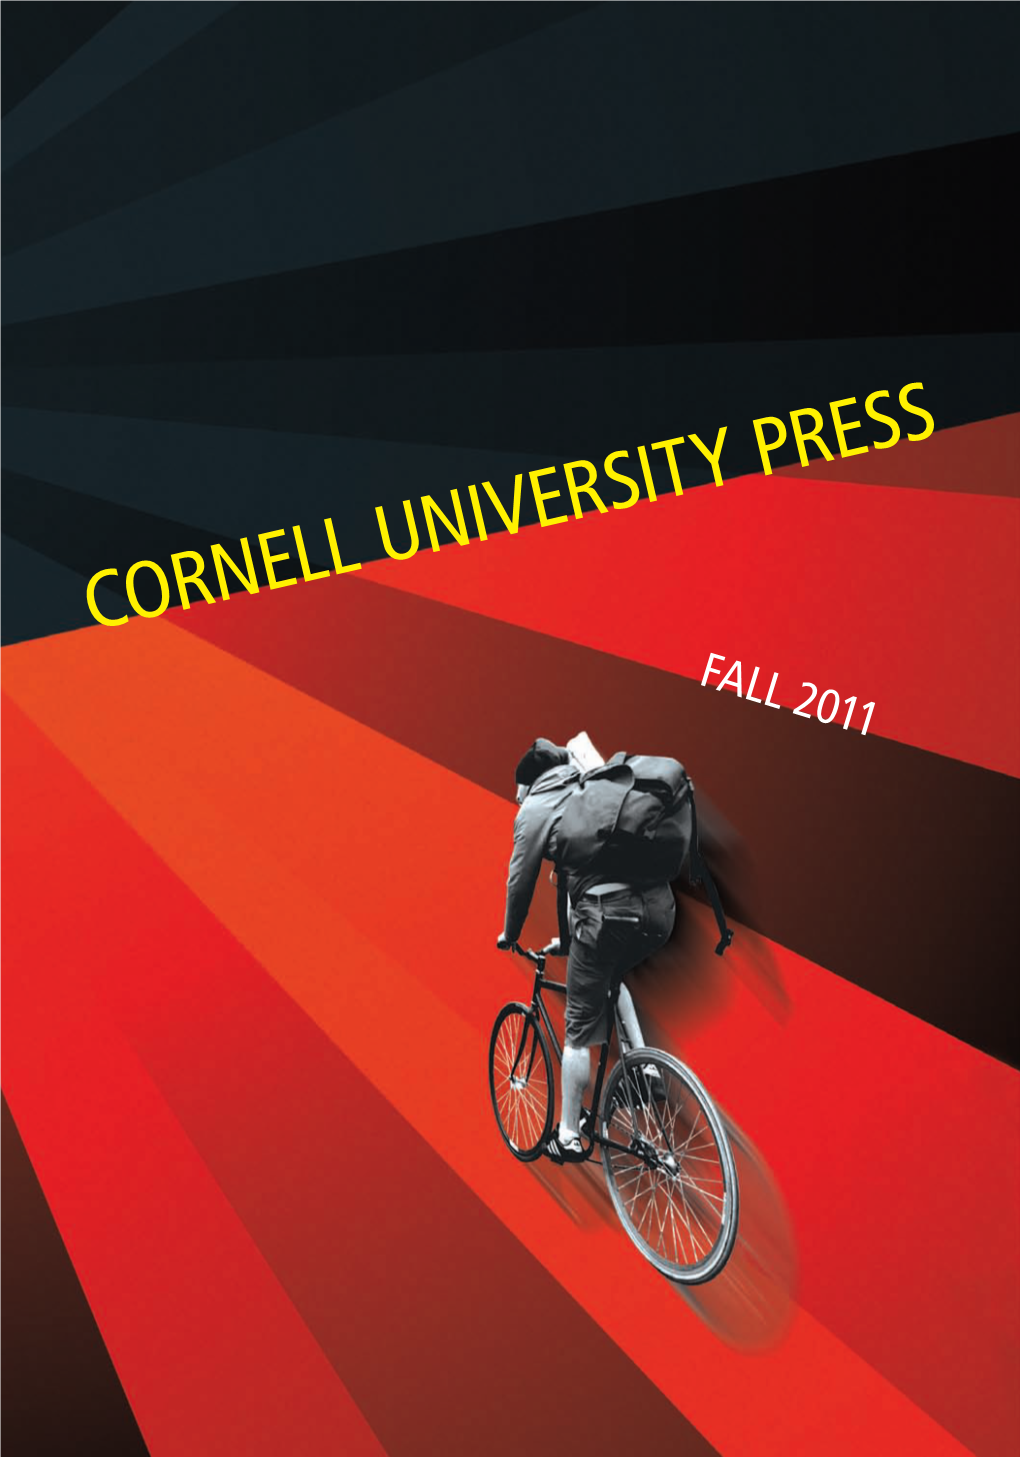 Cornell University Press Fall 2011